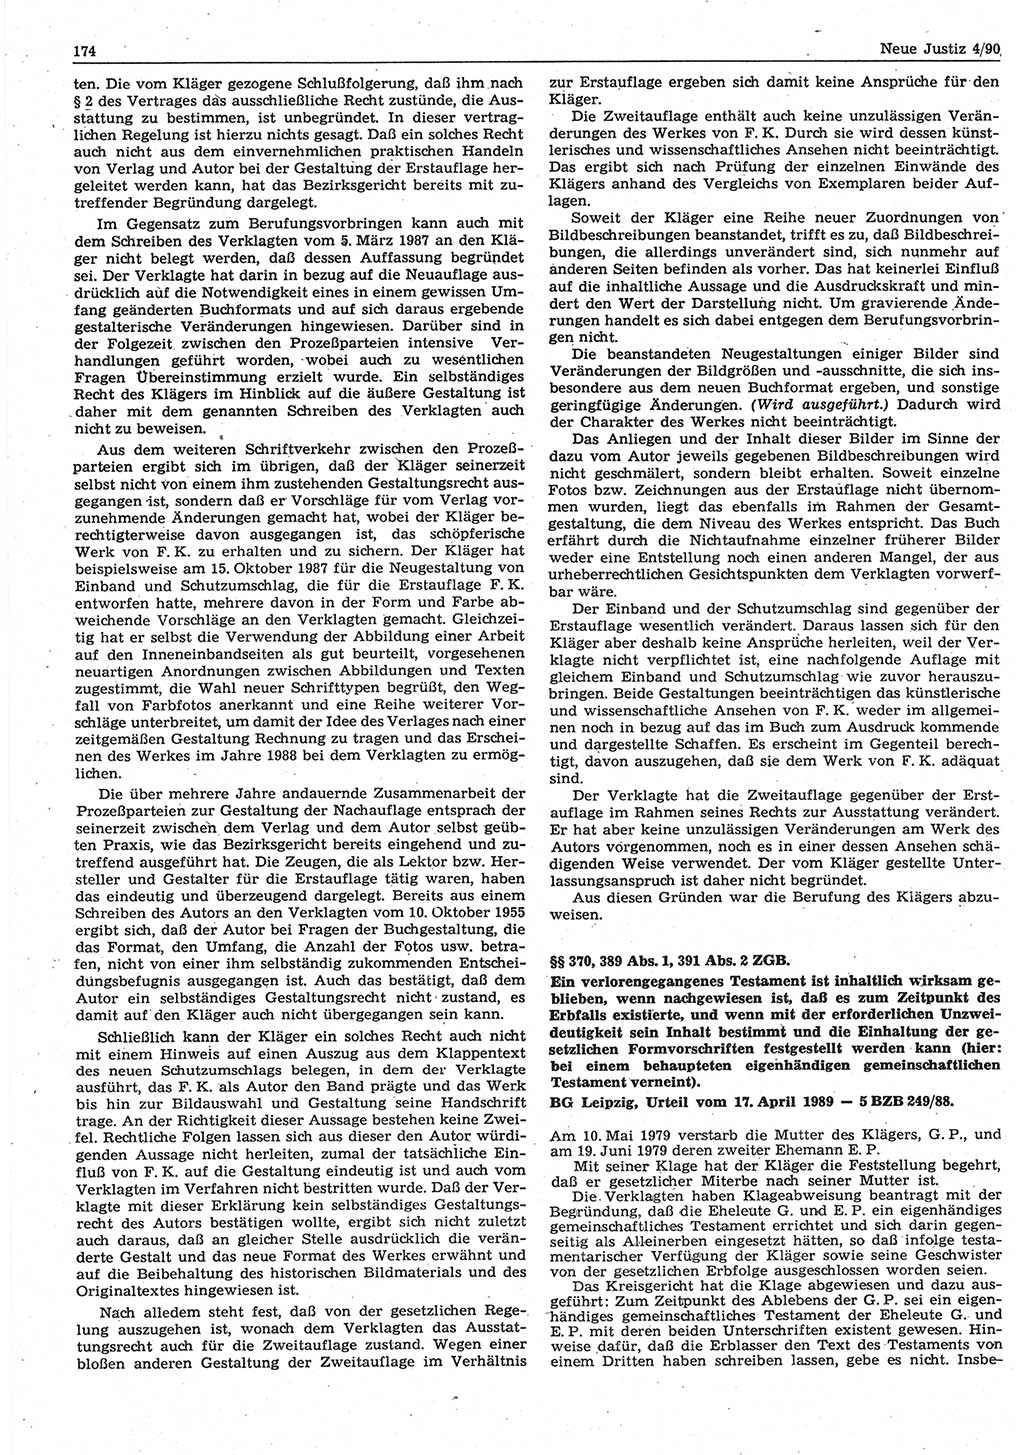 Neue Justiz (NJ), Zeitschrift für Rechtsetzung und Rechtsanwendung [Deutsche Demokratische Republik (DDR)], 44. Jahrgang 1990, Seite 174 (NJ DDR 1990, S. 174)